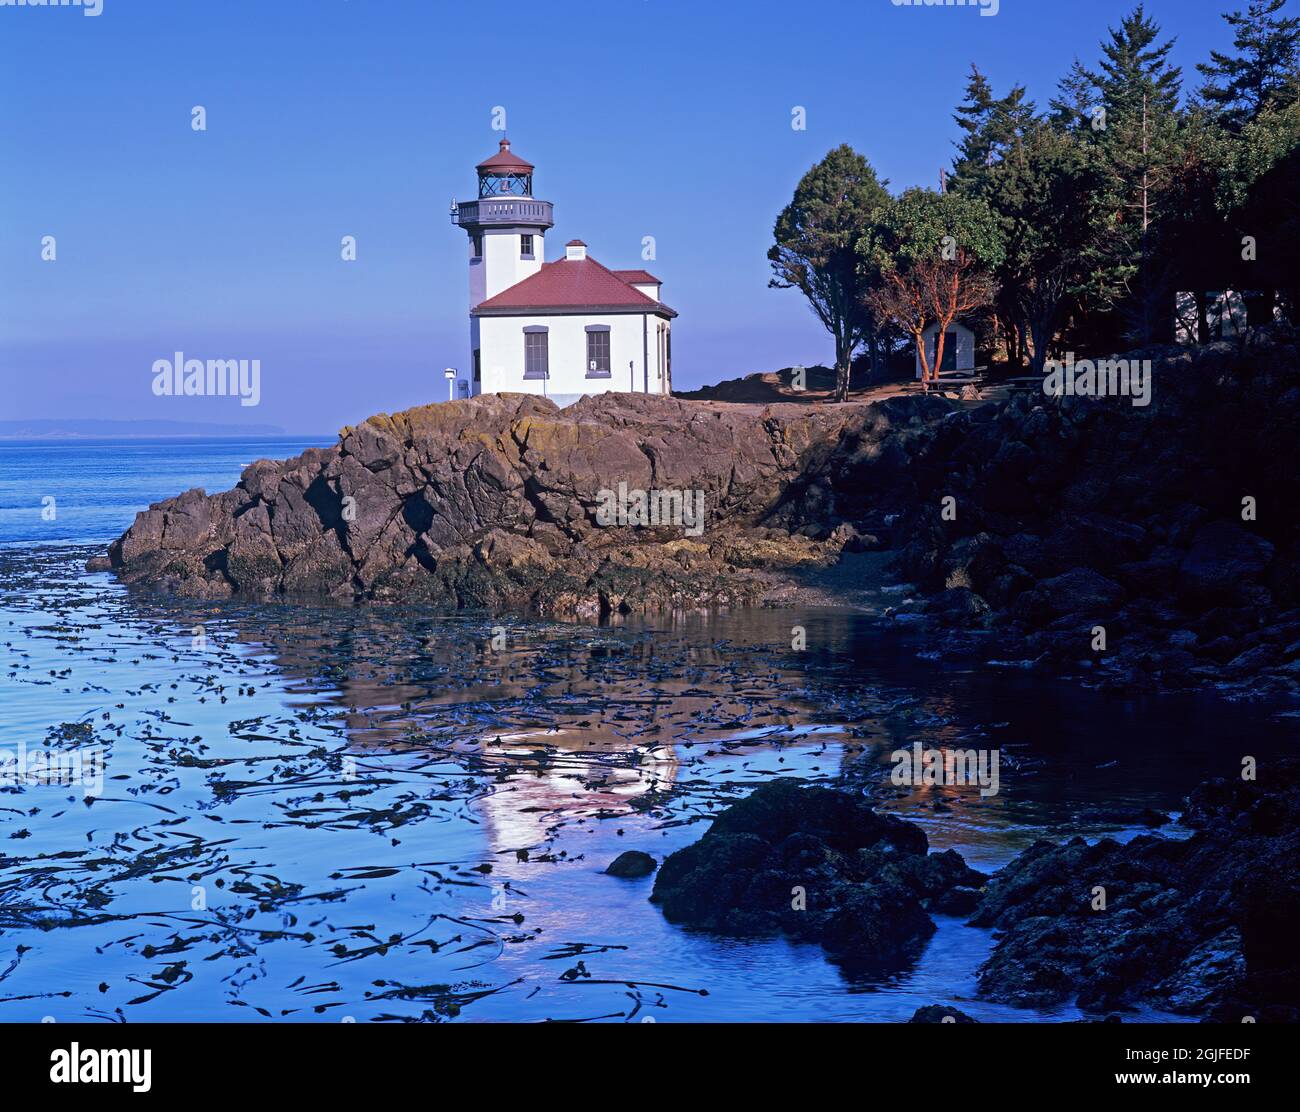 Washington State, San Juan Island, Lime Kiln Lighthouse, 1919, Eingang zur Haro Strait Stockfoto